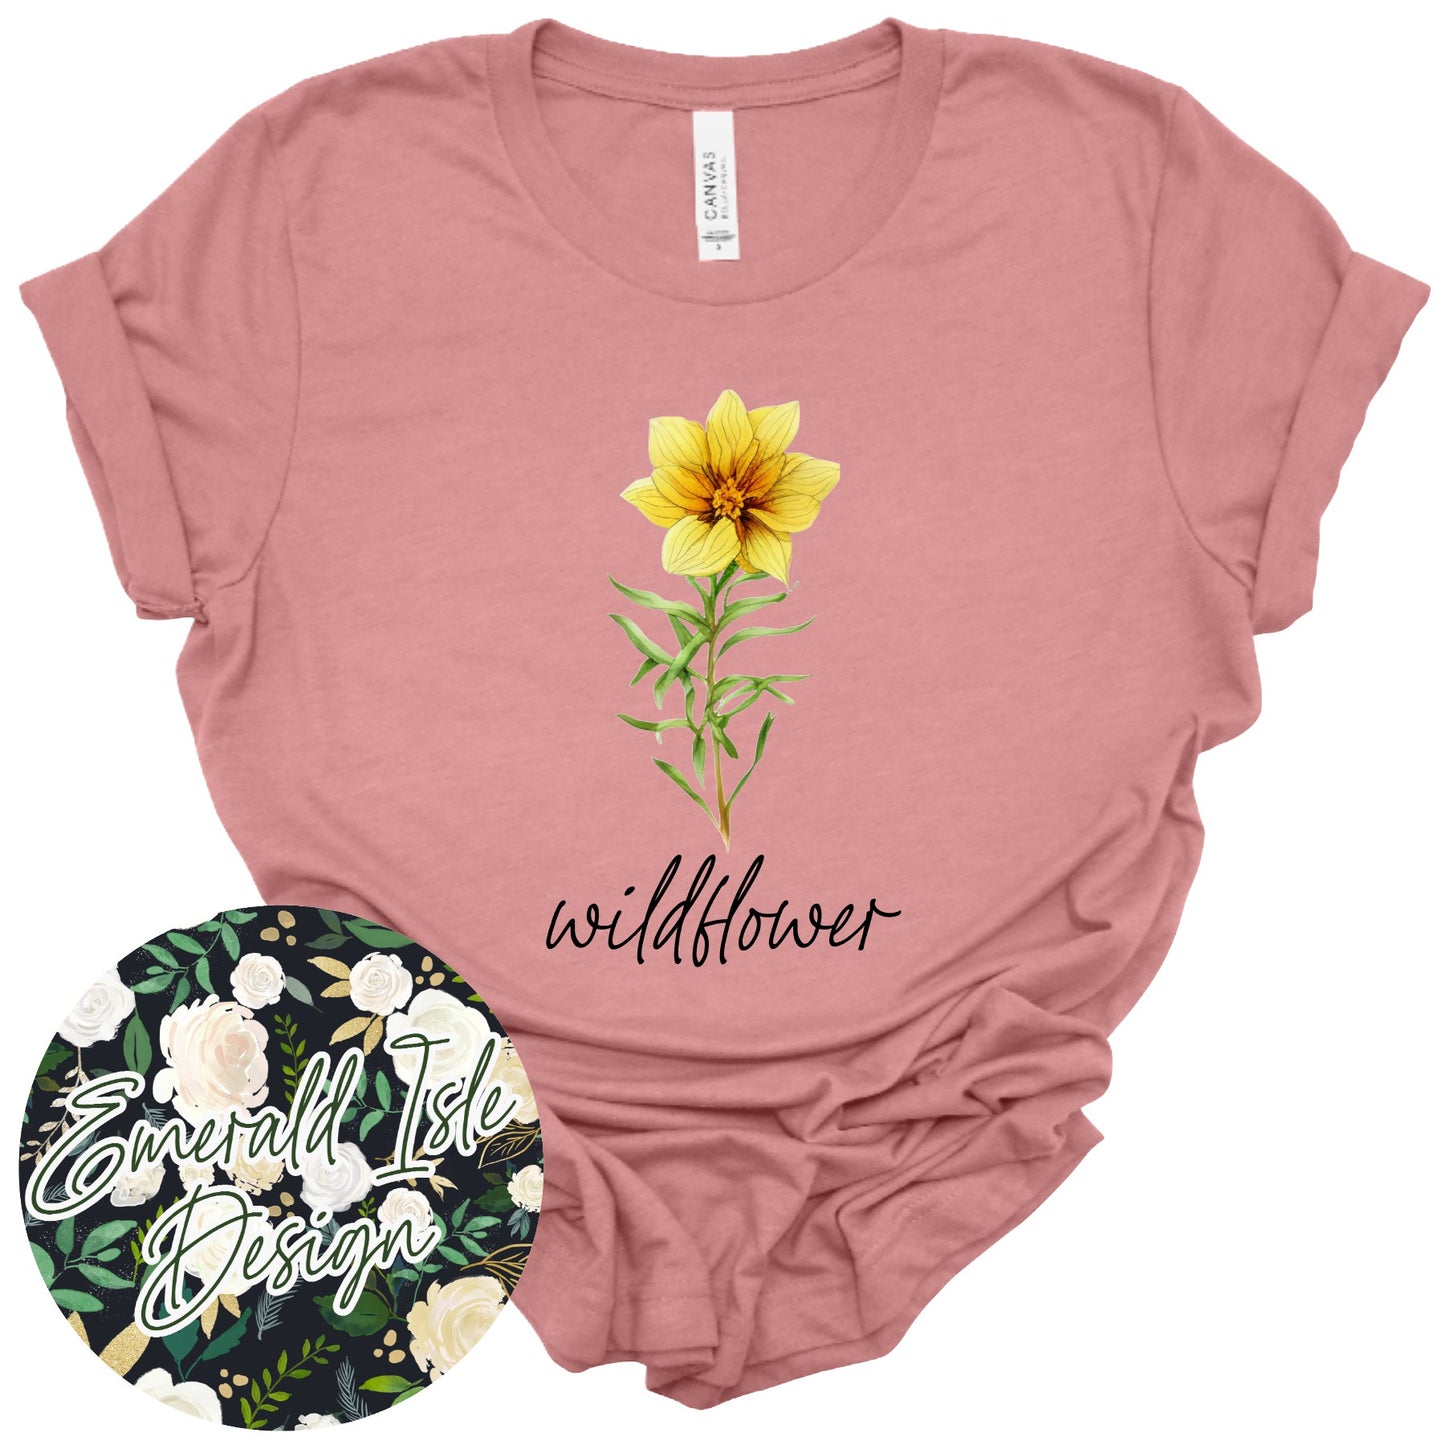 Wildflower Design